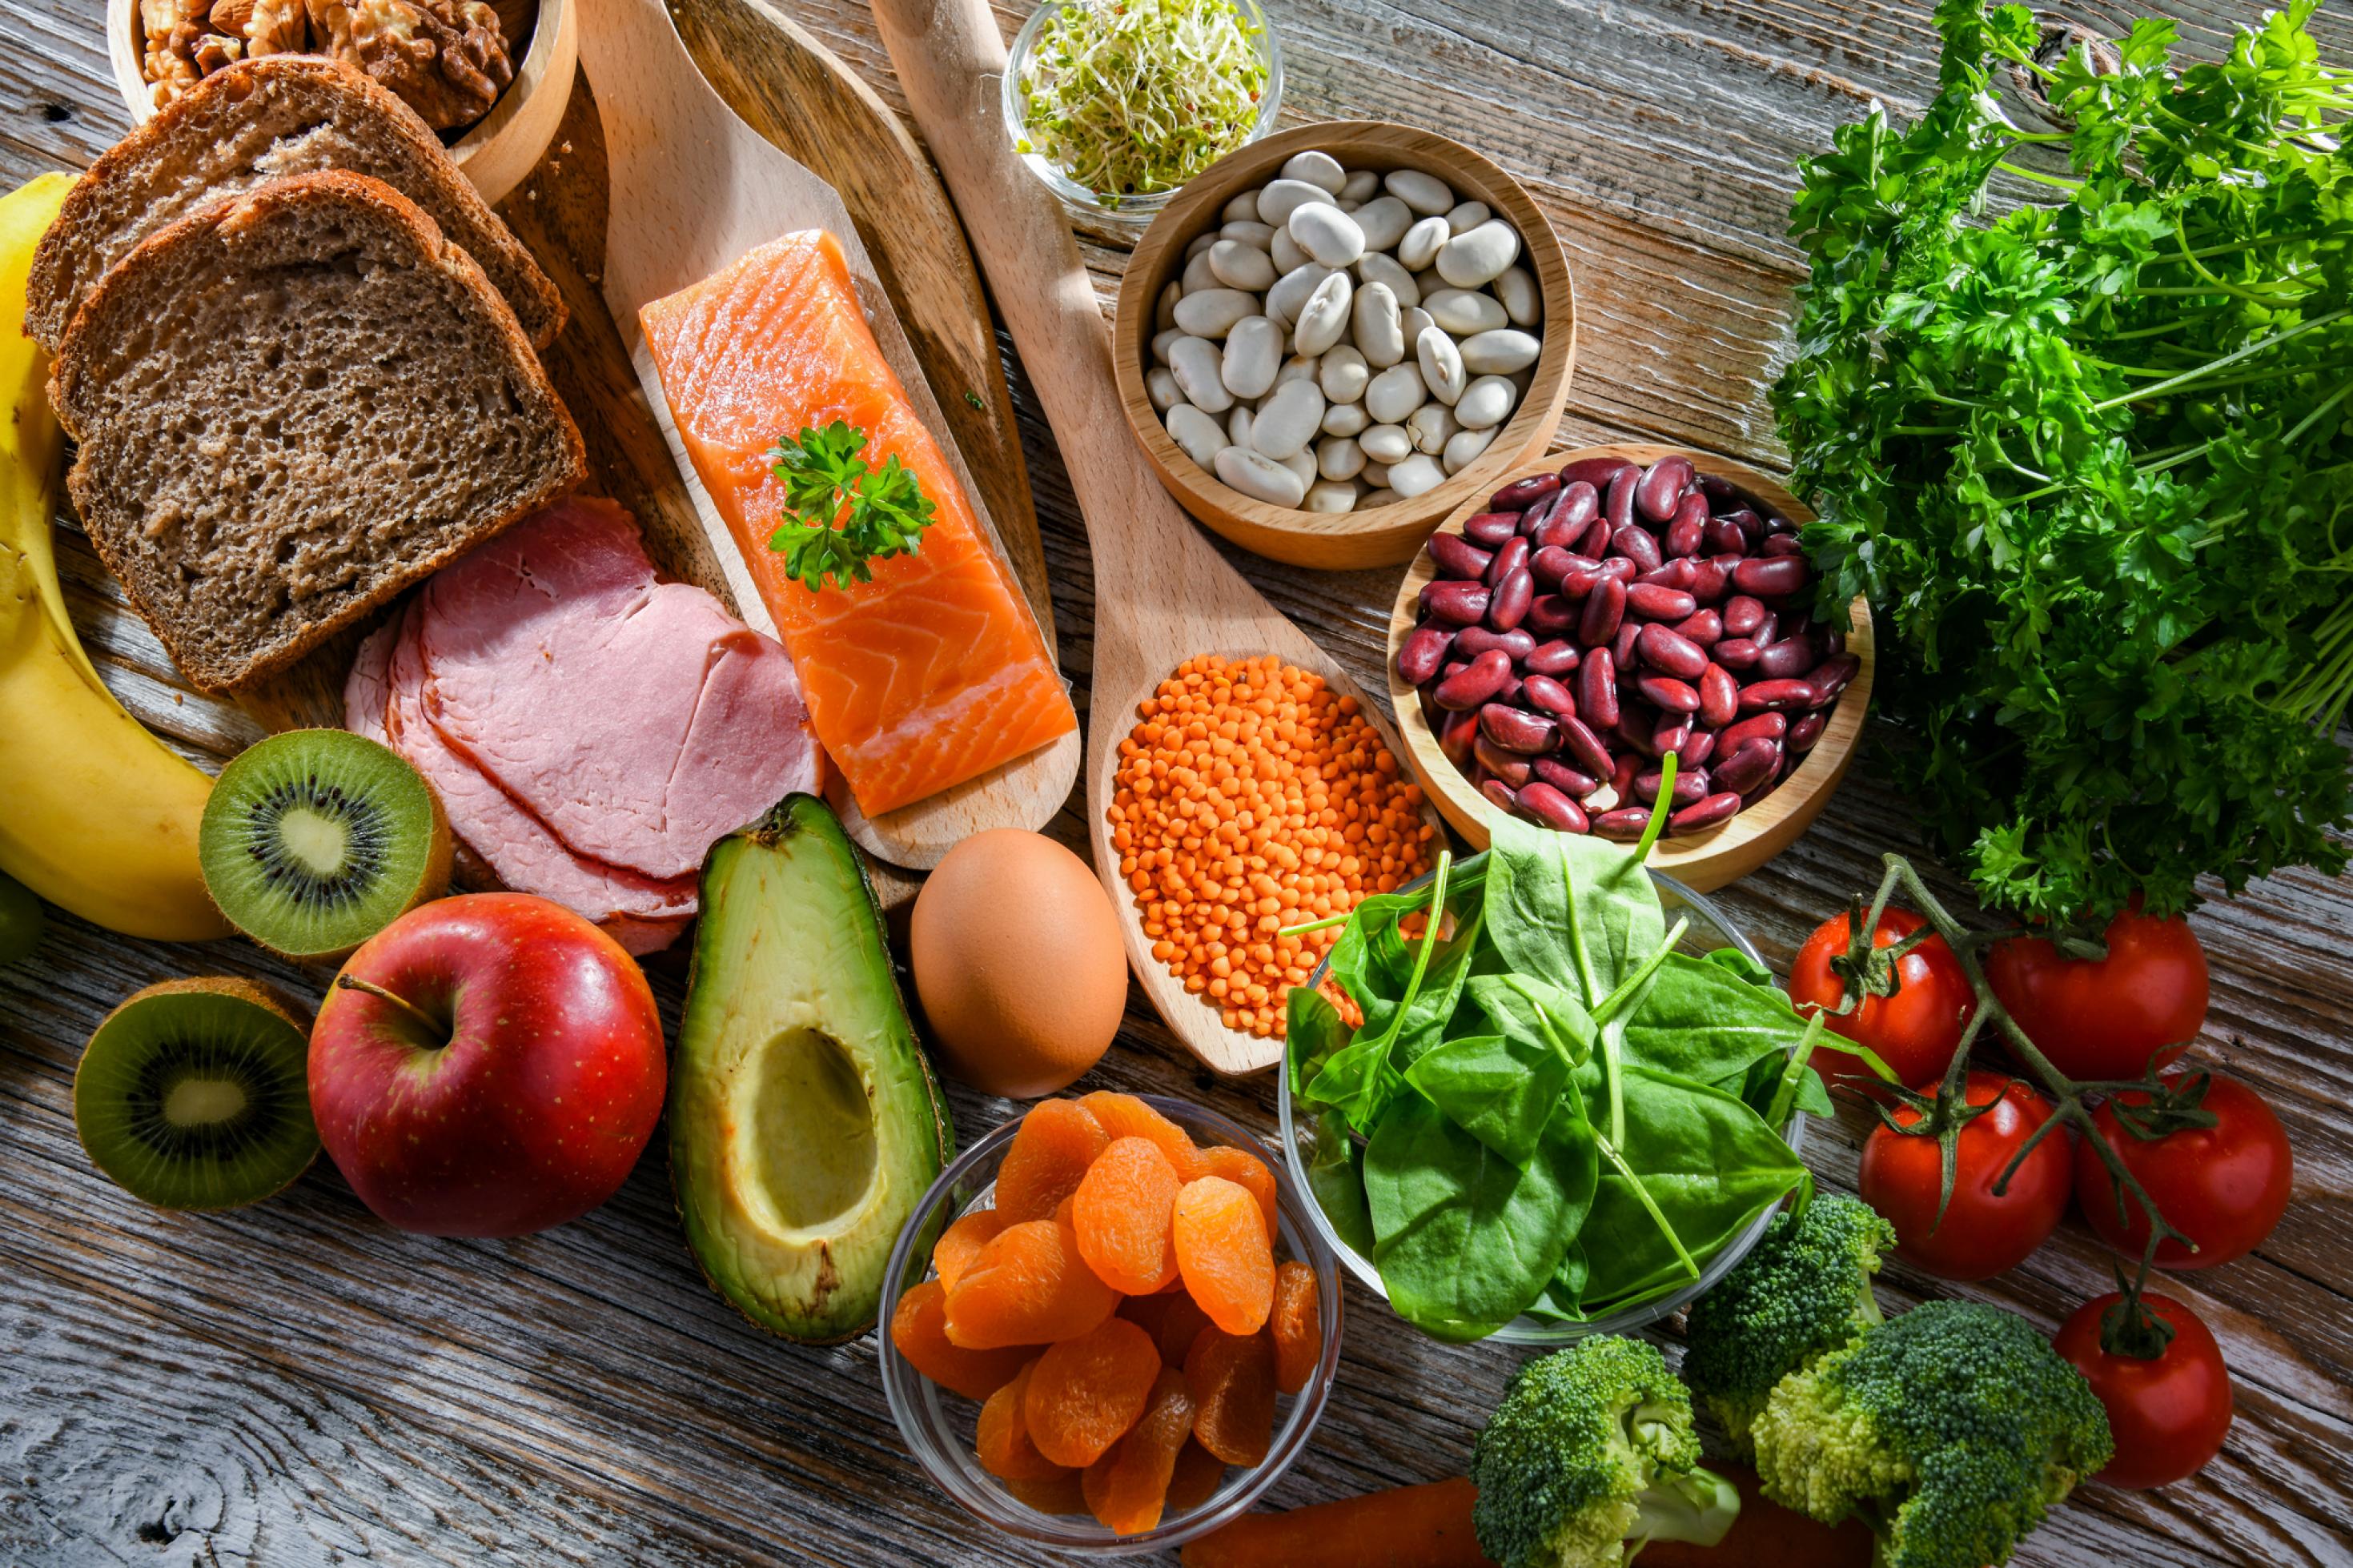 Draufsicht: Ein Überblick von gesunden Lebensmitteln, die auf einer Tischplatte liegen. Avocado, Vollkornbrot, Kräuter, Spinat, Tomaten, Brokkoli, Apfel, Kiwi, Lachs, Ei, Nüsse und Hülsenfrüchte.